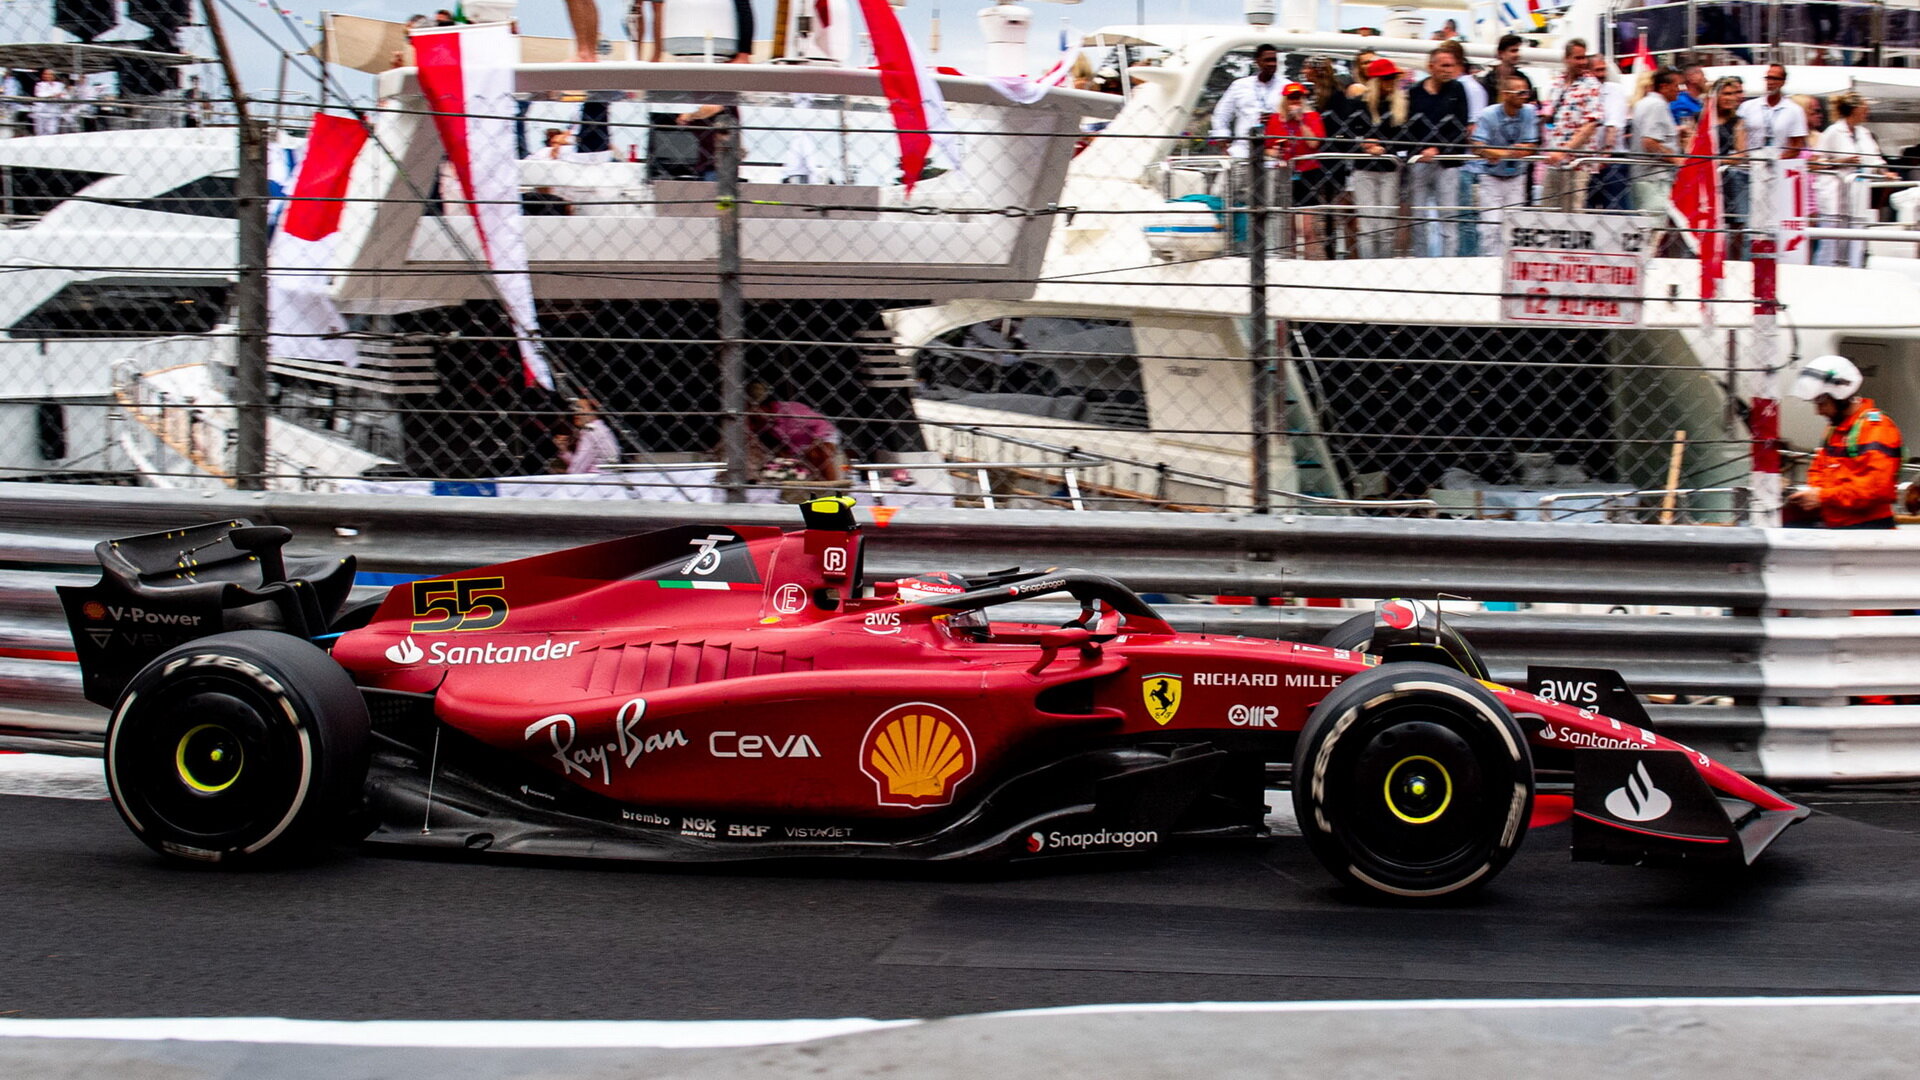 Carlos Sainz v závodě v Monaku